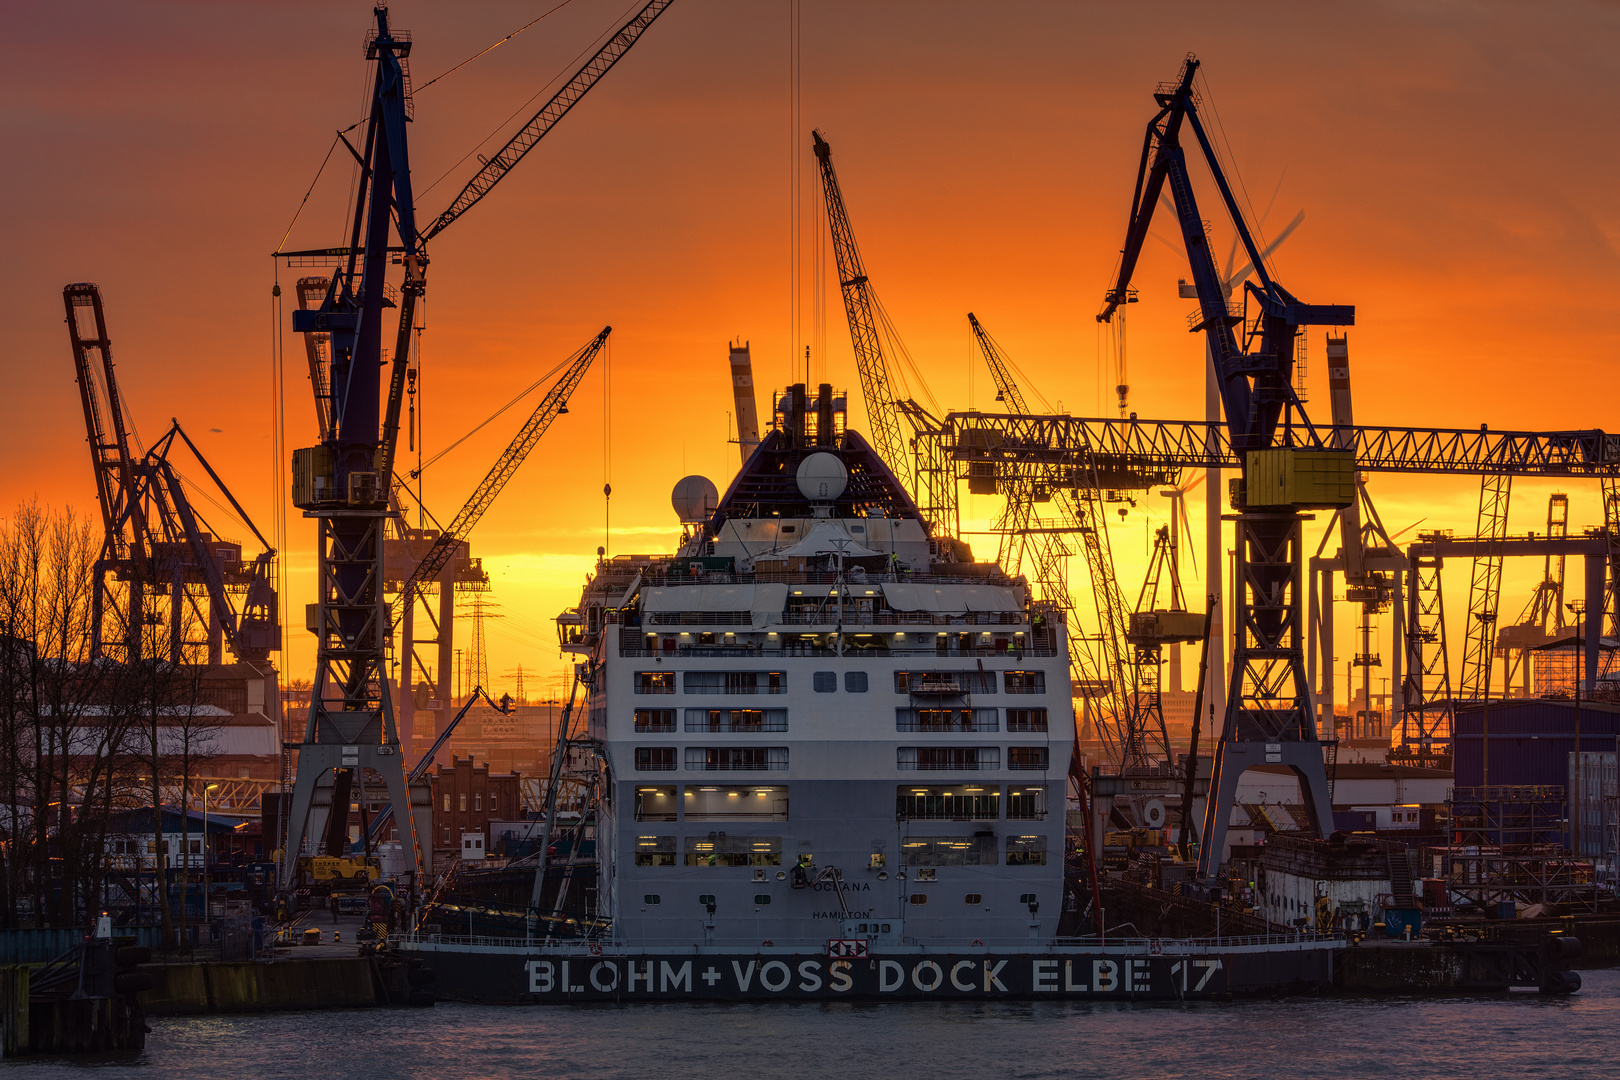 Dock Elbe 17 - 04121704